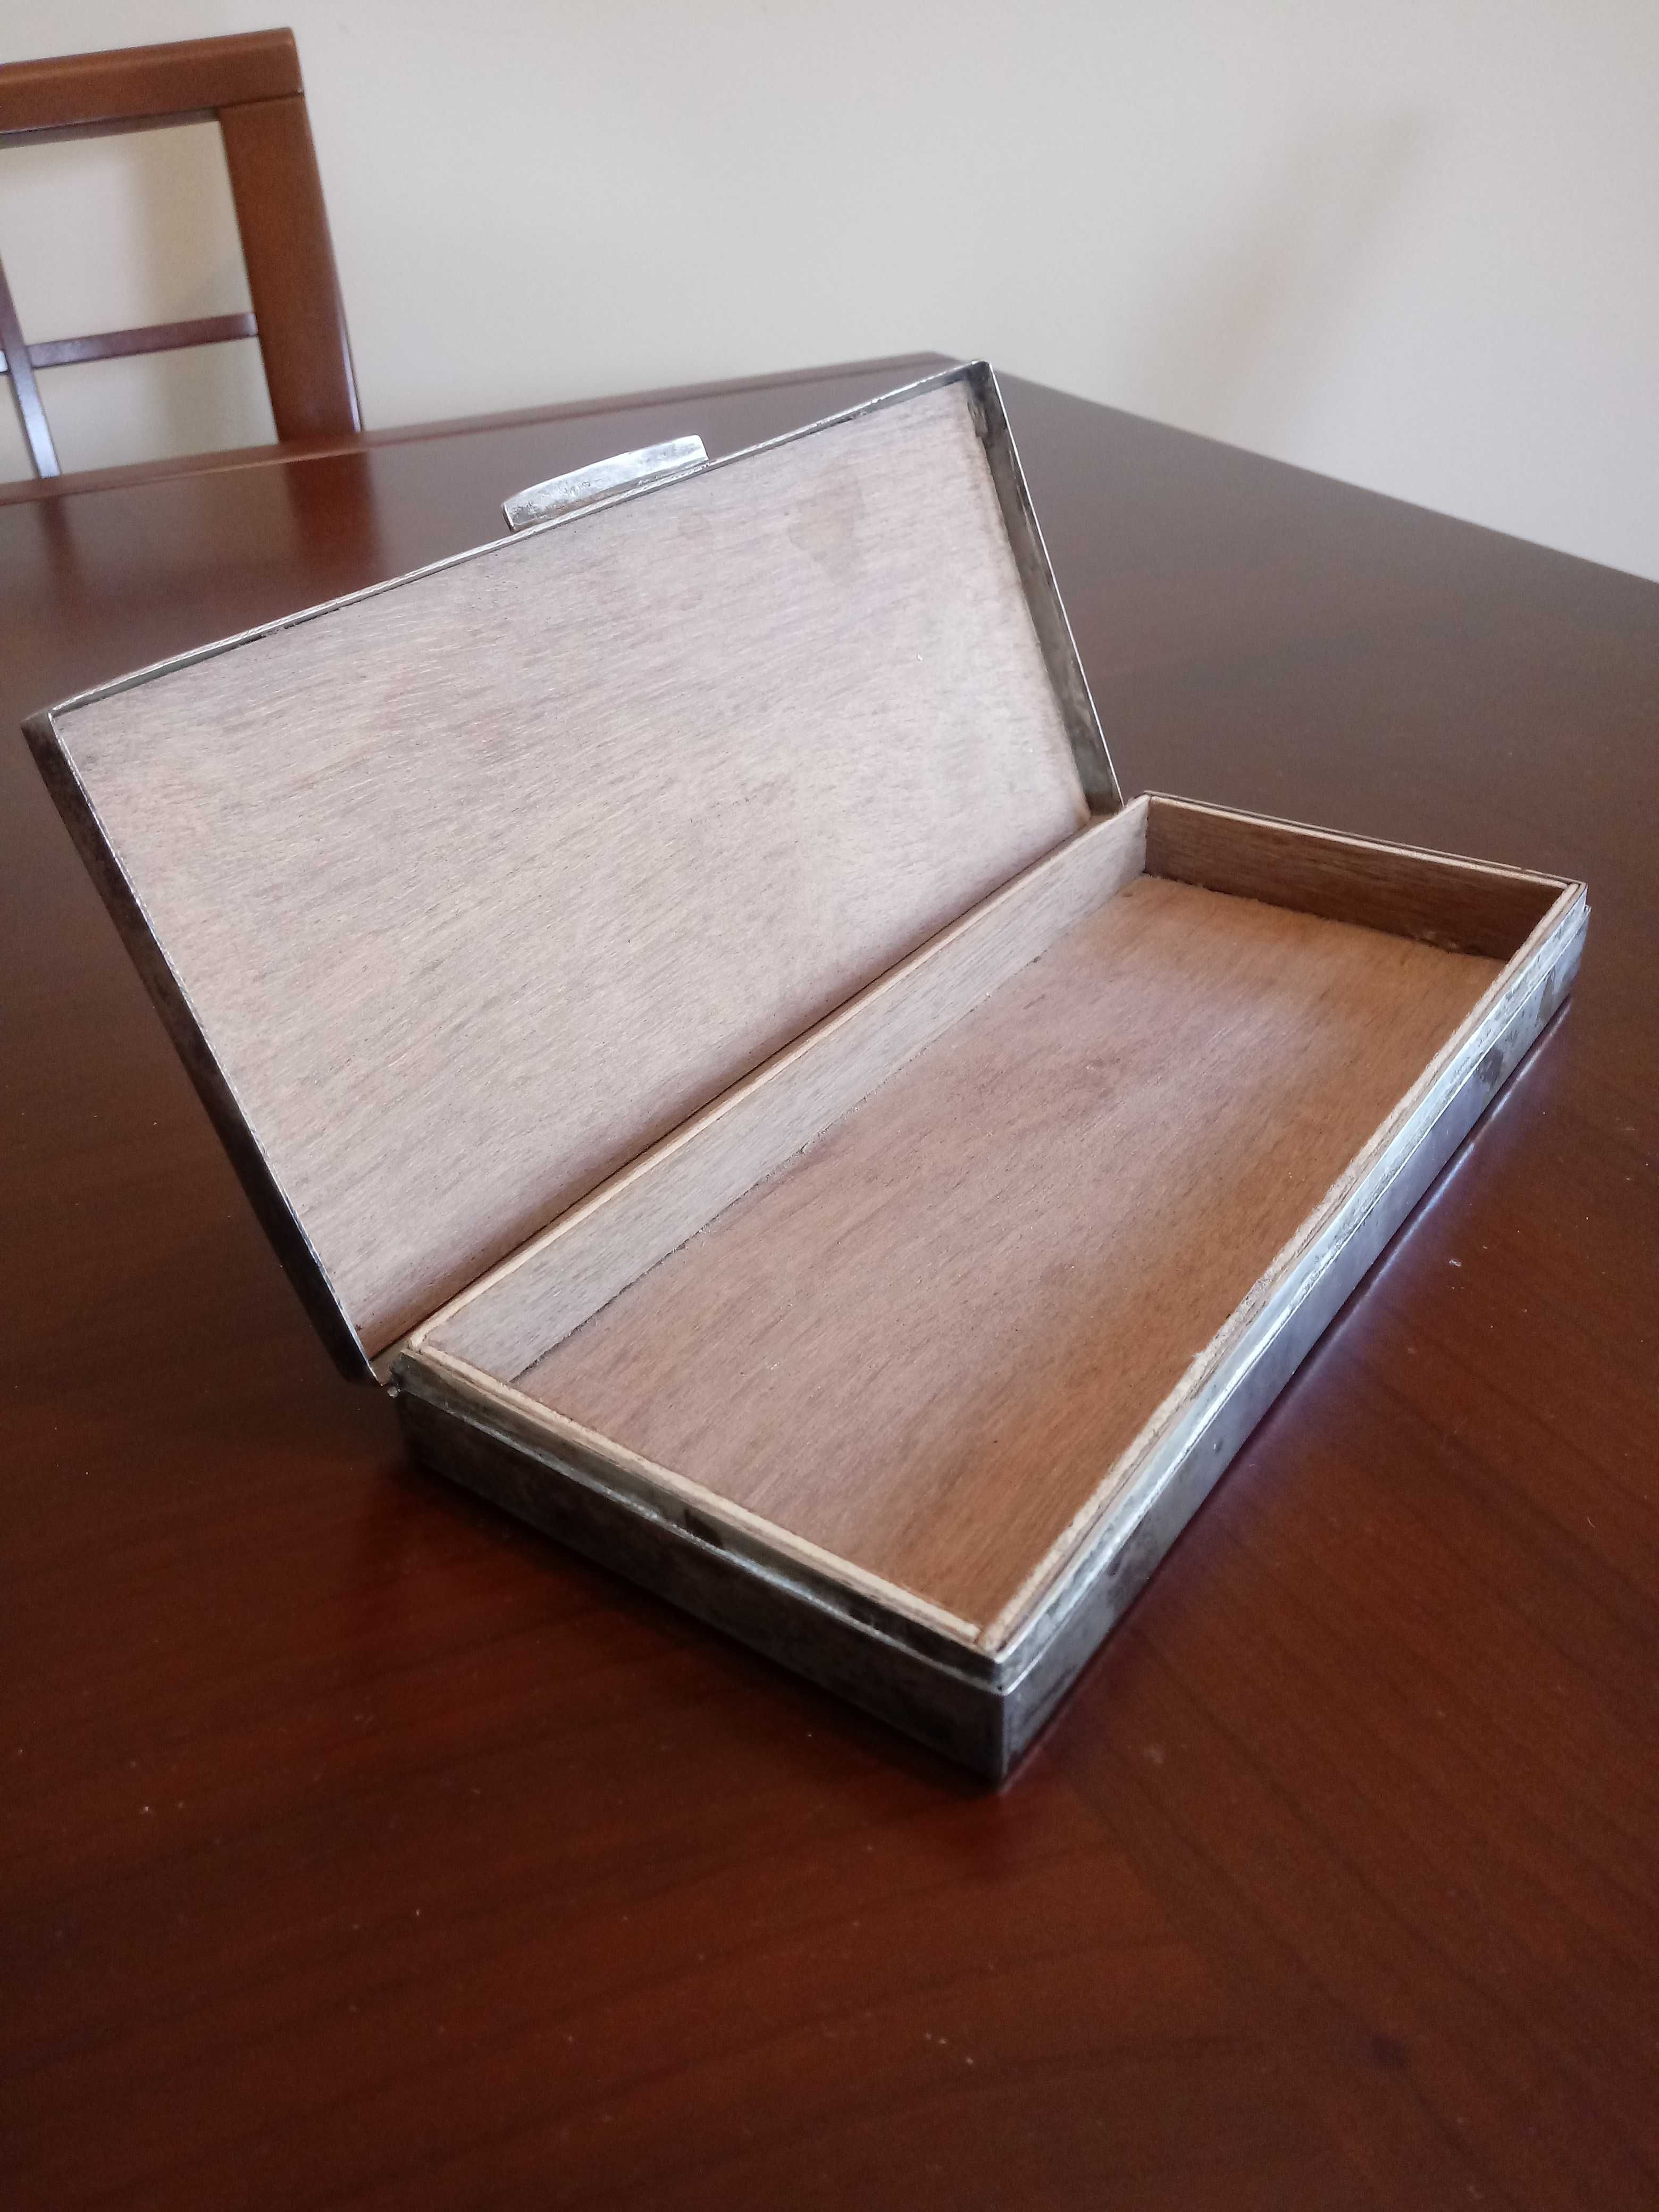 Kasetka (pudełko) z posrebrzanej alpaki.